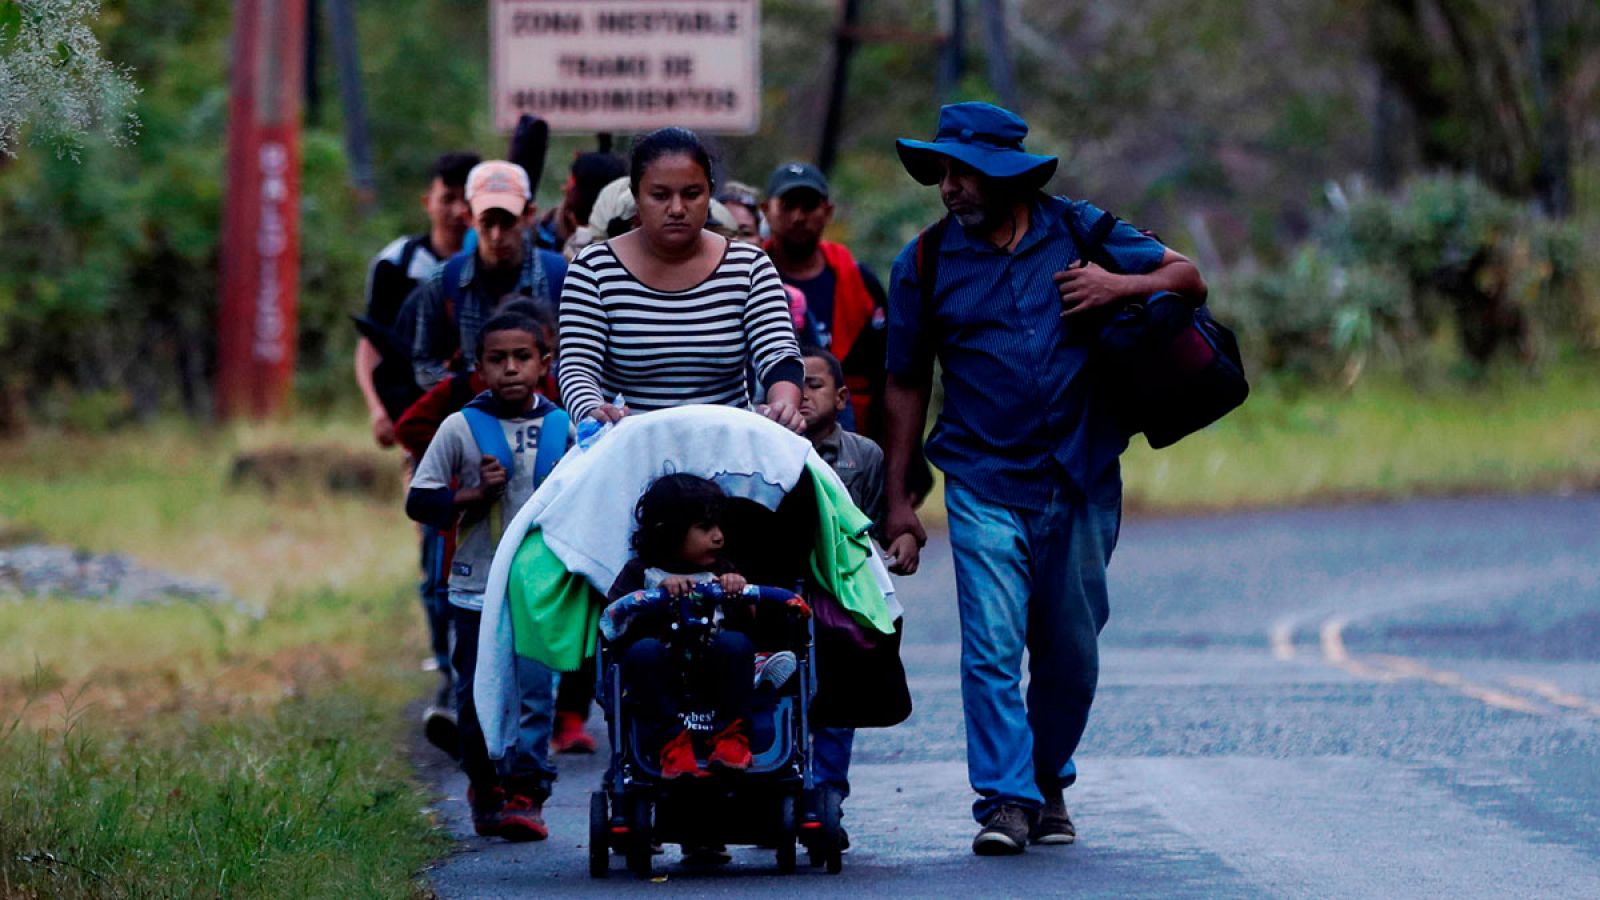 Una nueva caravana migrantUna nueva caravana de migrantes cruza Guatemala para llegar a México y Estados Unidos hondureña cruza Guatemala para llegar a México y Estados Unidos